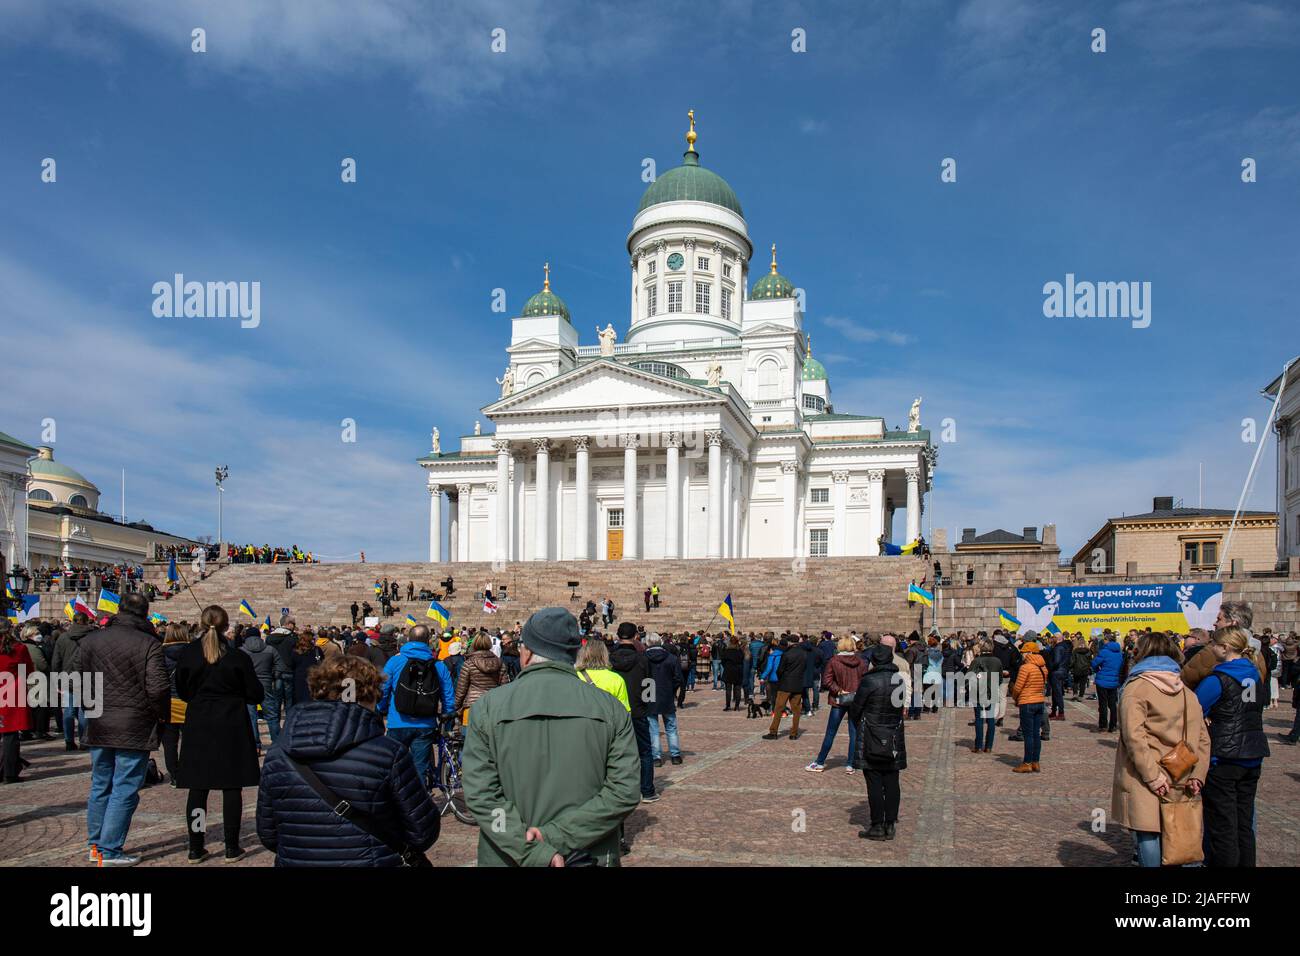 People on Senate Square at Vapaa Ukraina - vapaa maailma demonstration in support of Ukraine in Helsinki, Finland Stock Photo